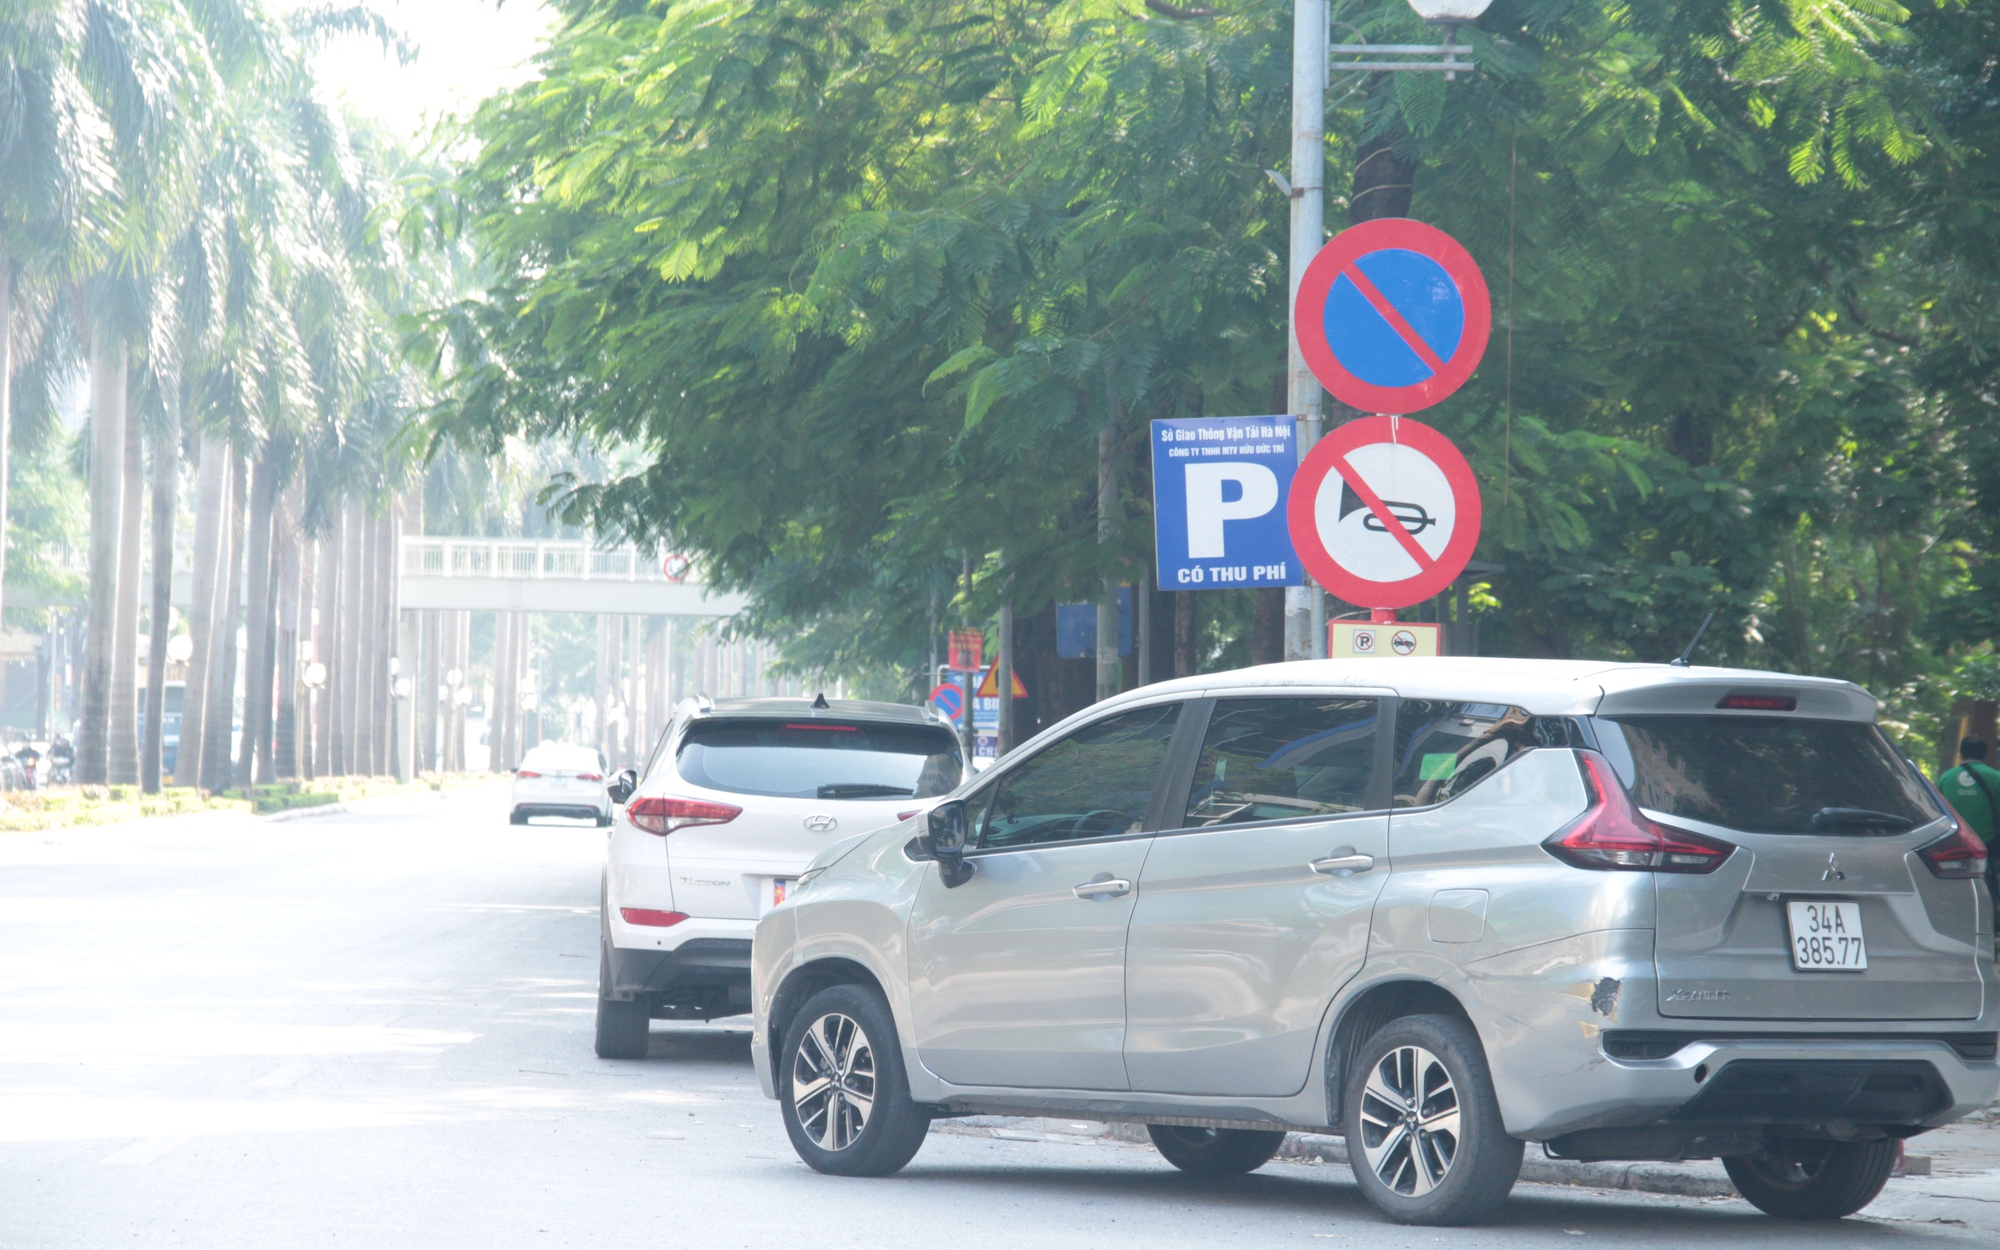 Kỳ lạ: Vừa cấp phép đỗ xe thu phí, vừa cắm biển cấm dừng đỗ trên tuyến phố ở Hà Nội